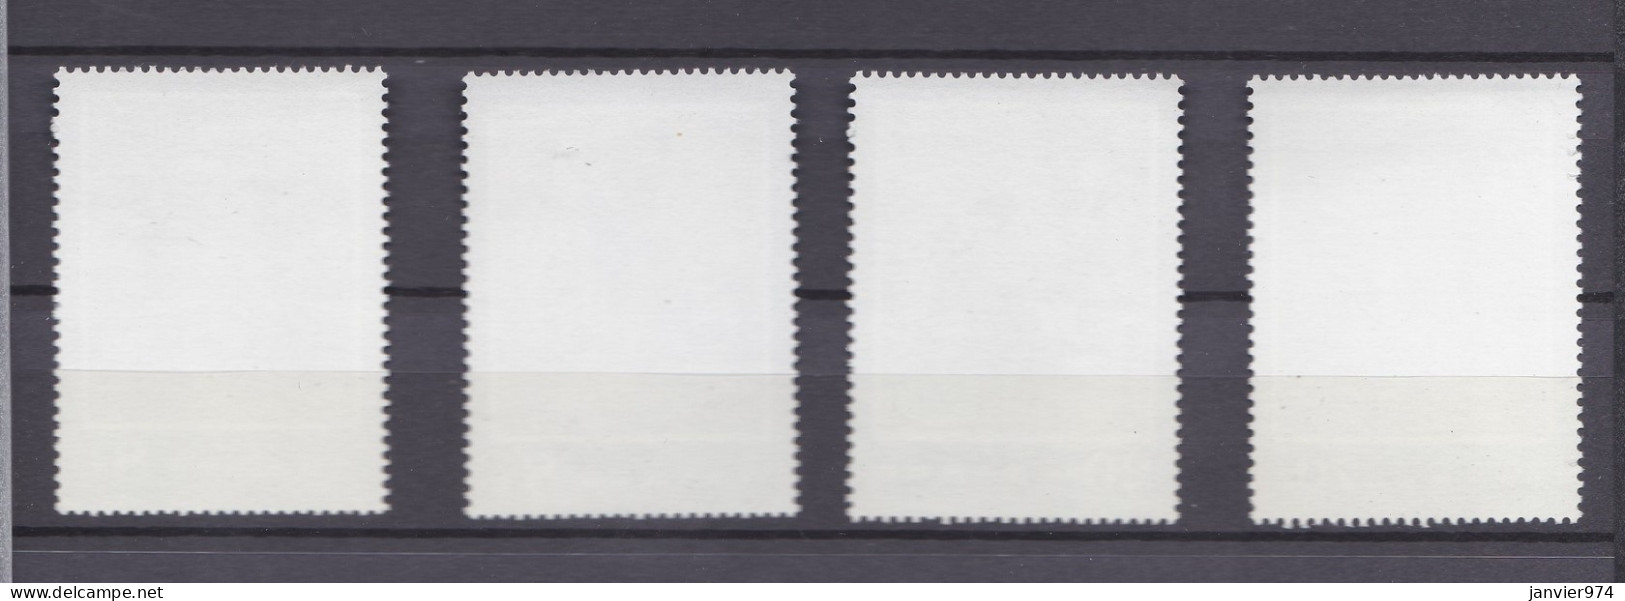 Chine 1984, Théâtre Le Pavillon De La Pivoine, La Serie Complète 1973 à 1976, 4 Timbres Neufs , Voir Scan Recto Verso - Unused Stamps